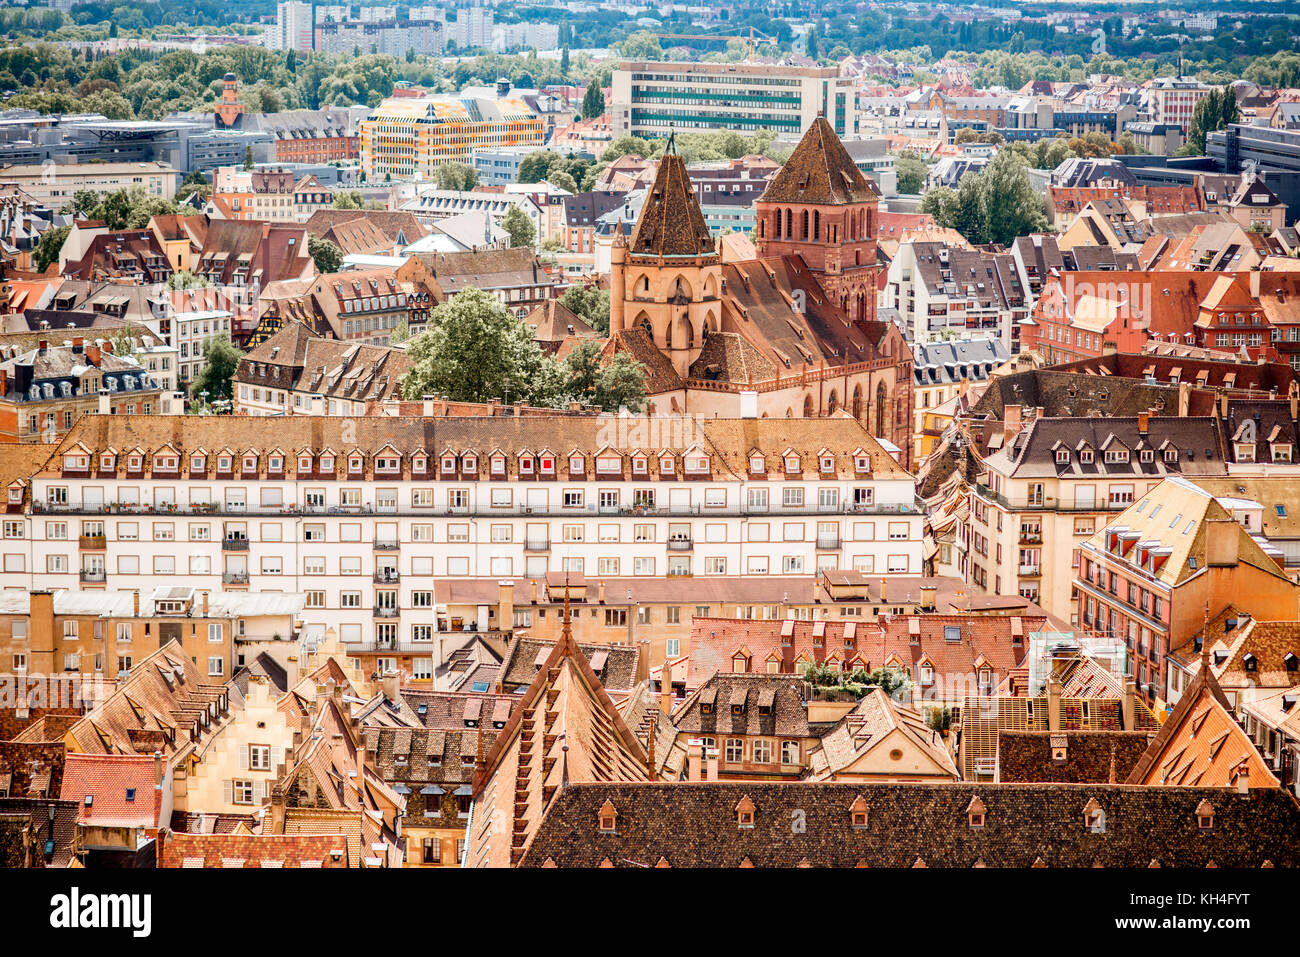 Strasbourg city in France Stock Photo